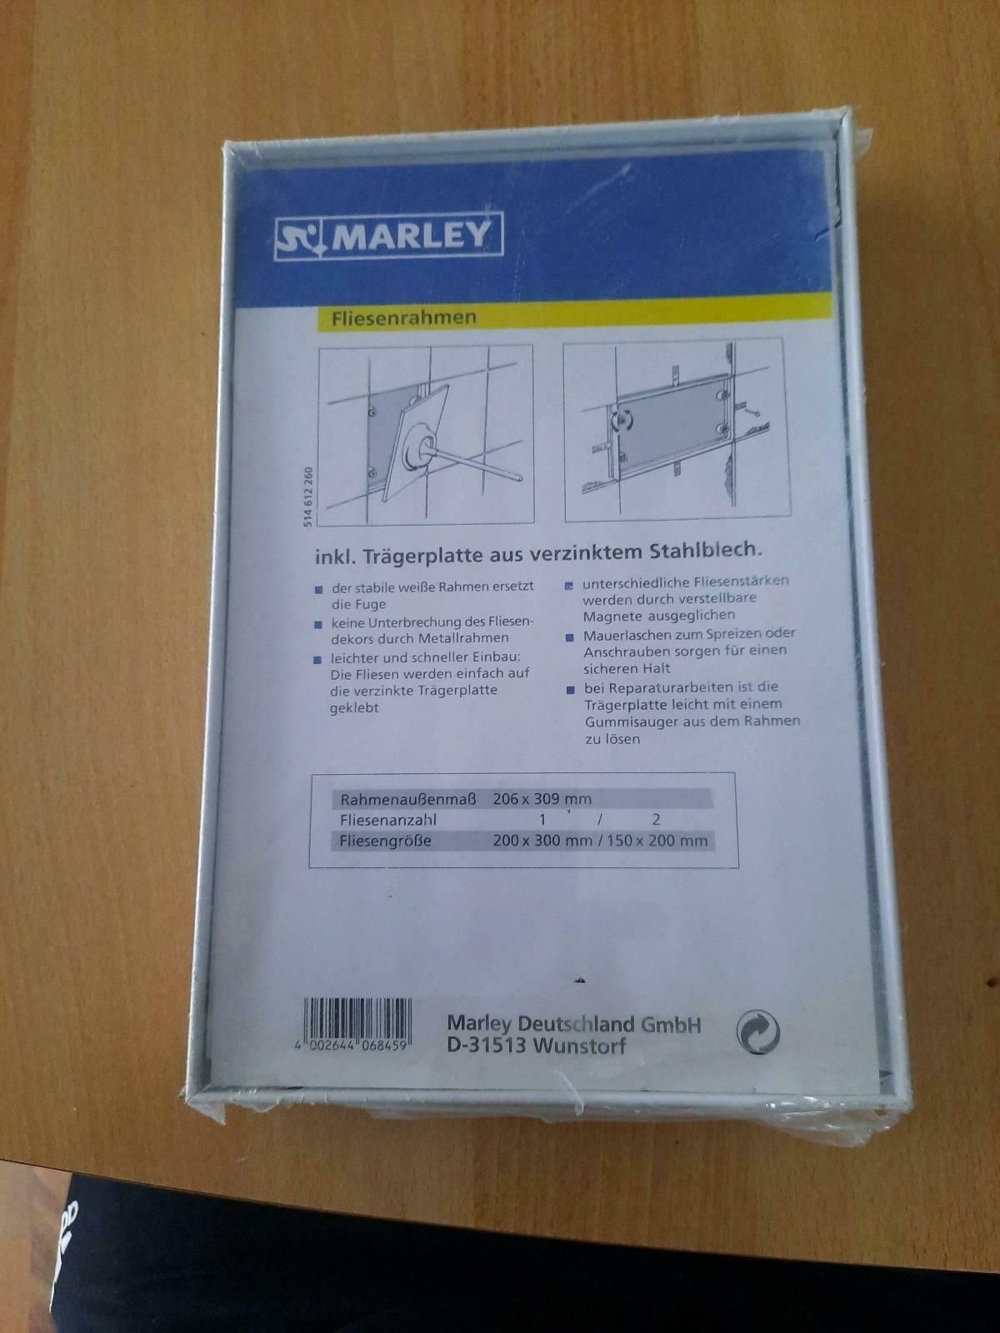 Marley Fliesenrahmen 206x309 mm für Fliesengröße 200x300 unbenutz